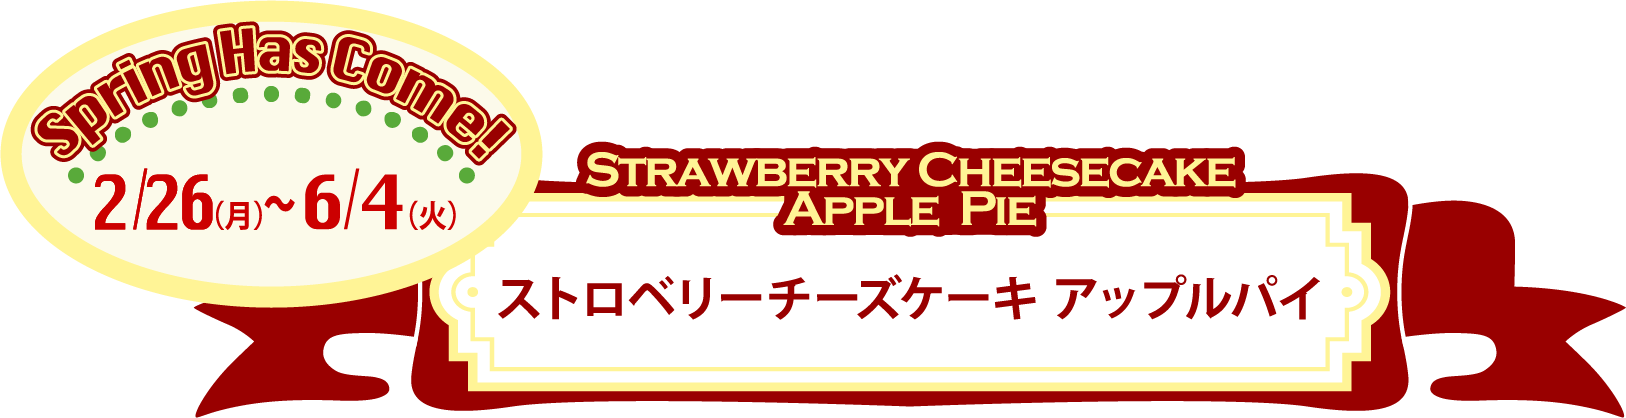 2/26(月)から『ストロベリーチーズケーキ アップルパイ』が販売スタート。